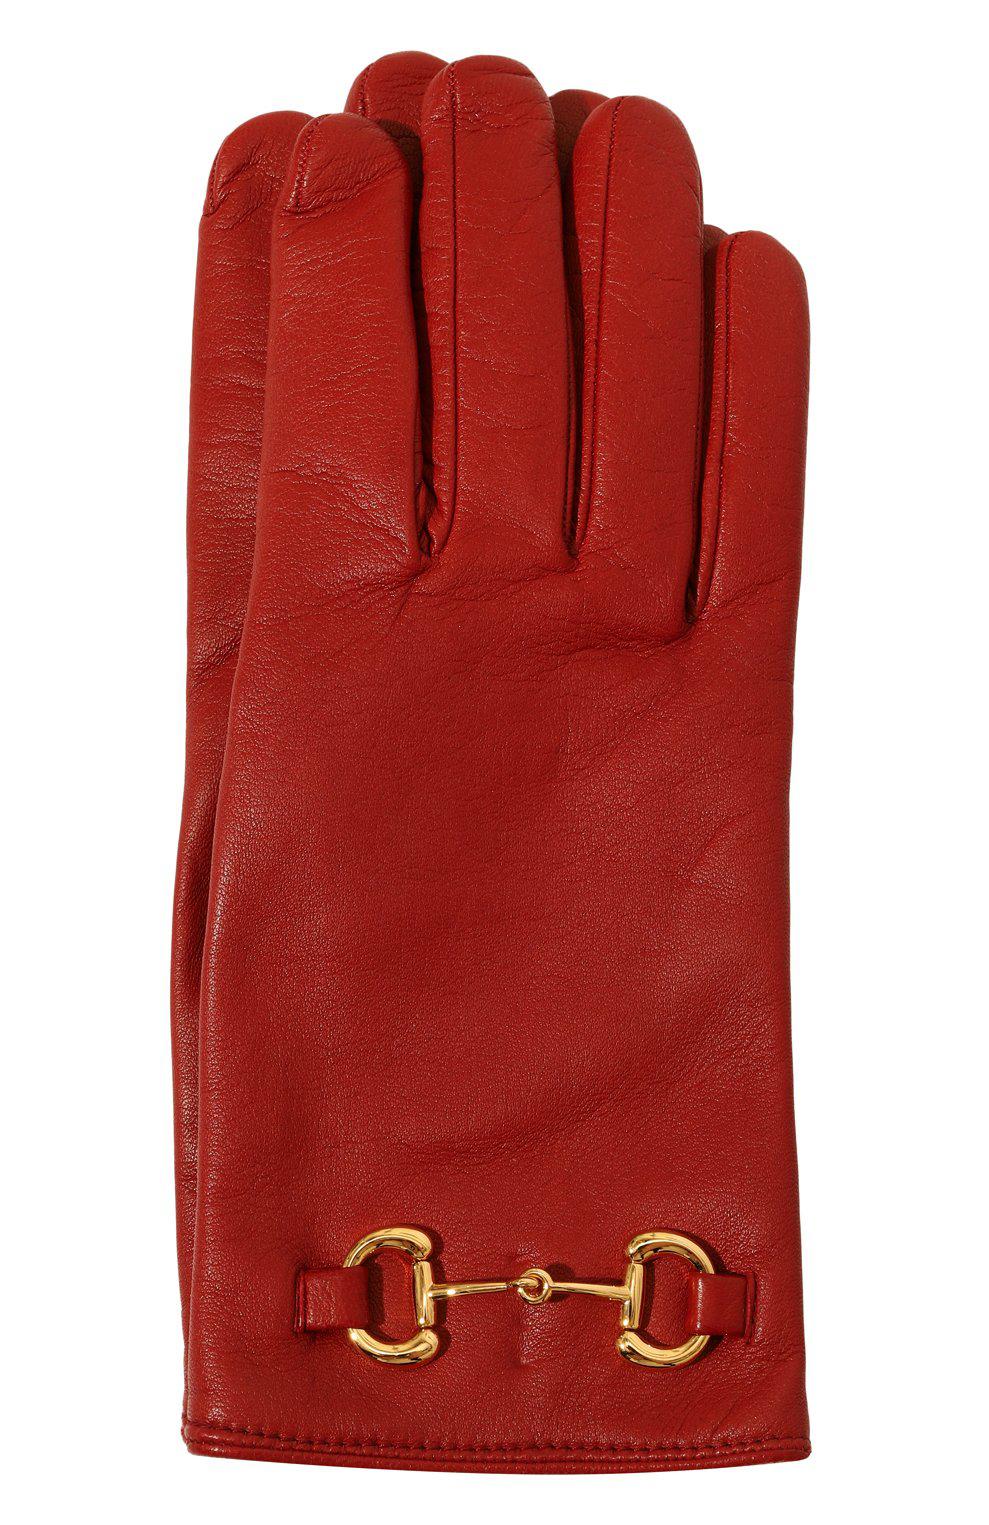 Кожаные перчатки Horsebit, Gucci, 73 440 руб.